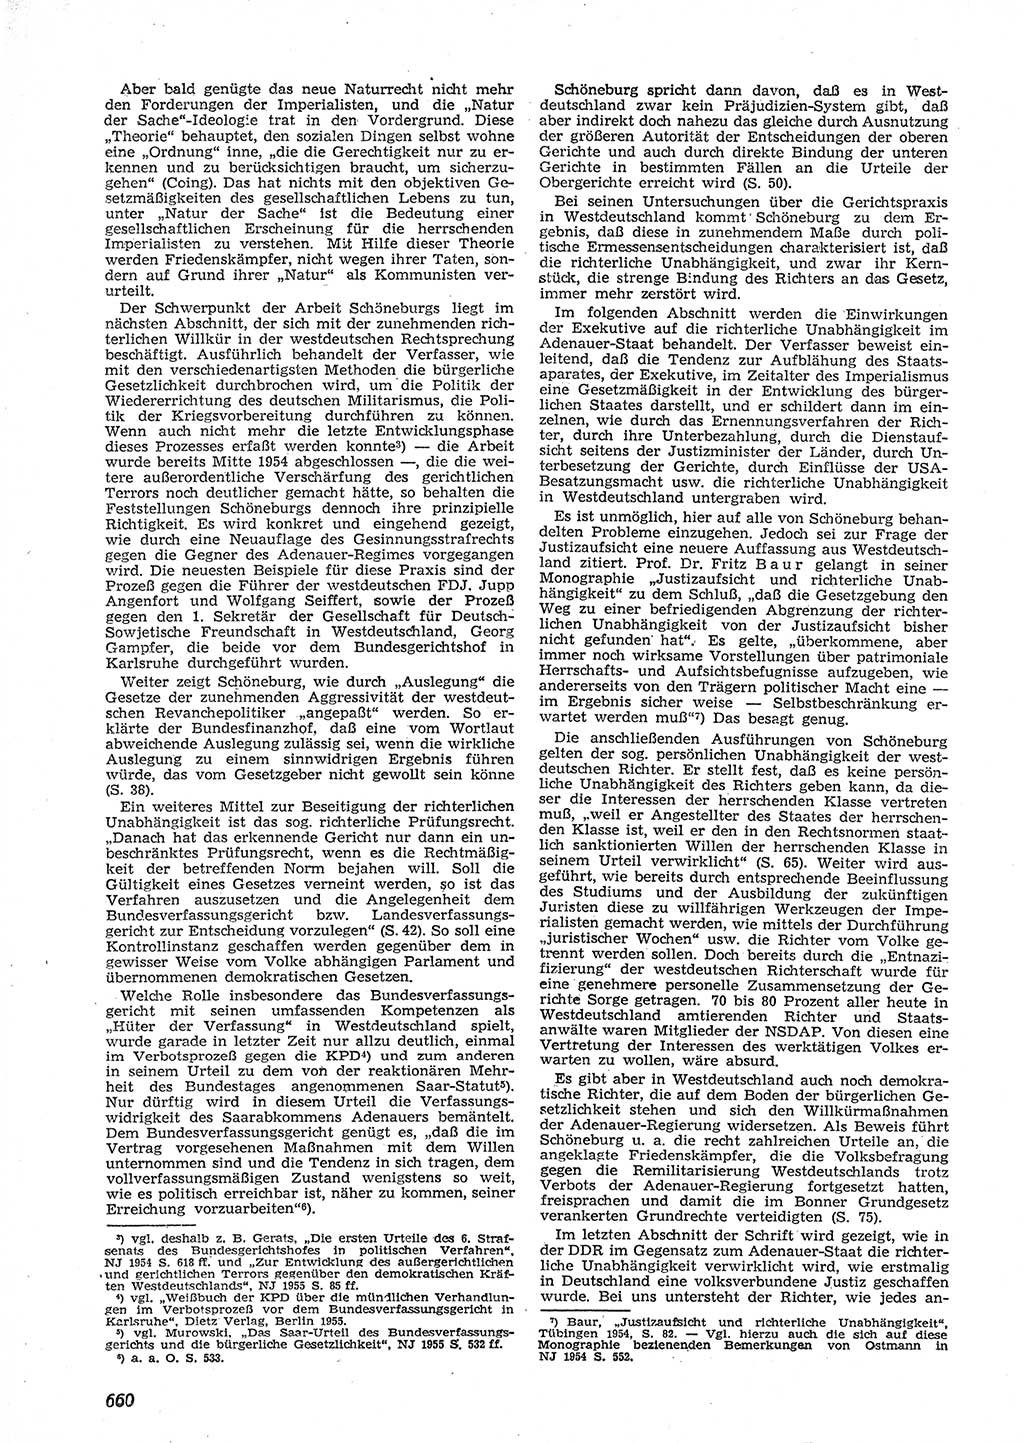 Neue Justiz (NJ), Zeitschrift für Recht und Rechtswissenschaft [Deutsche Demokratische Republik (DDR)], 9. Jahrgang 1955, Seite 660 (NJ DDR 1955, S. 660)